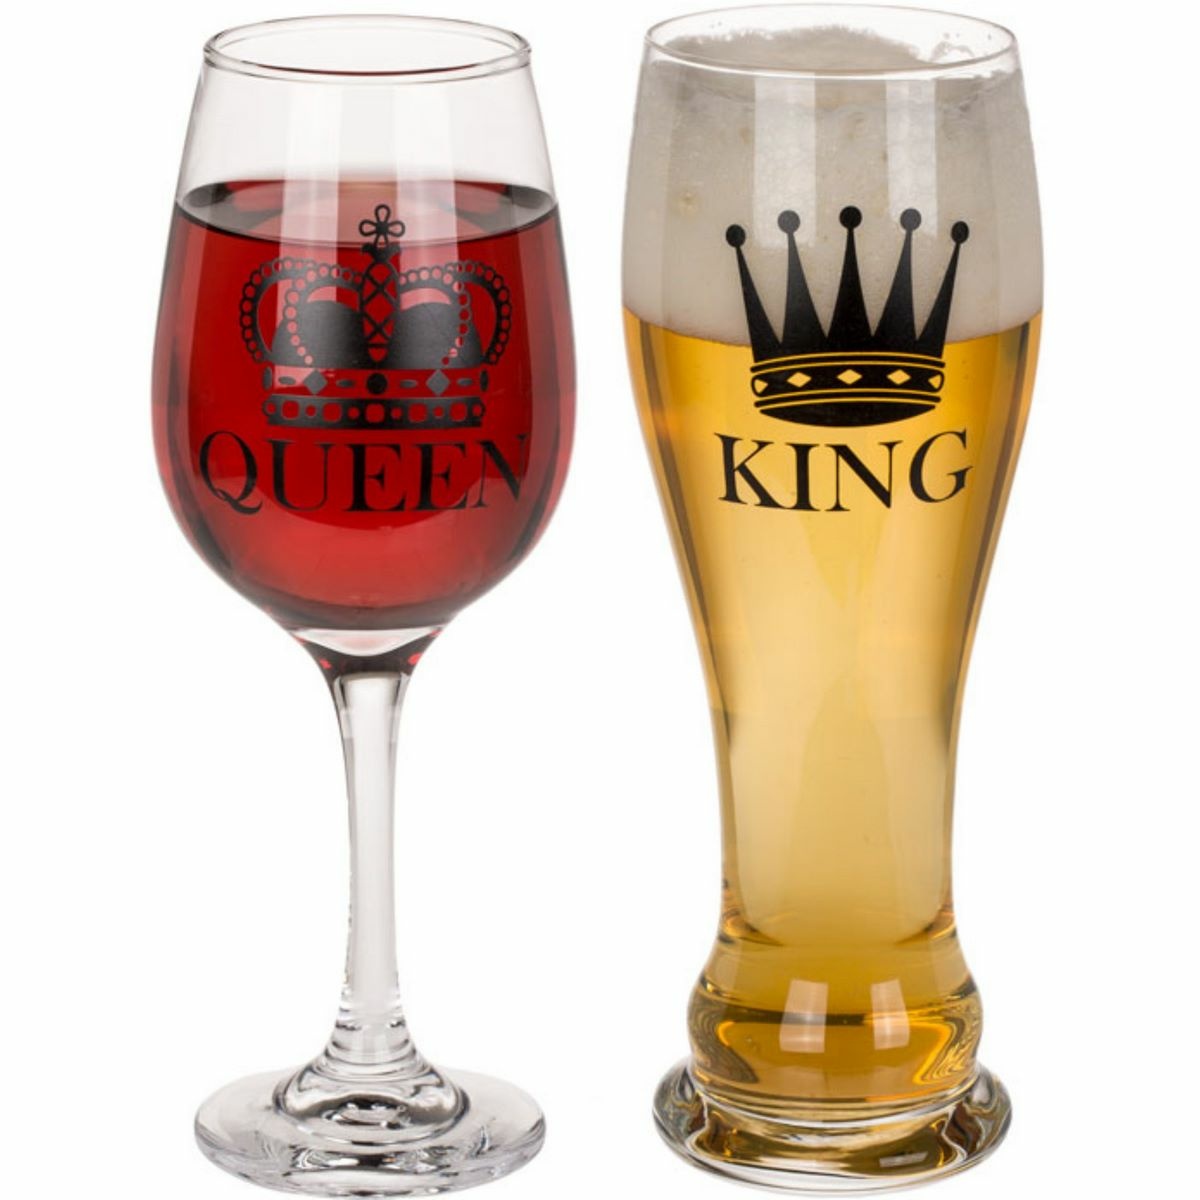 Pahare pentru cuplu King și Queen, 600 ml și430 ml. e4home.ro